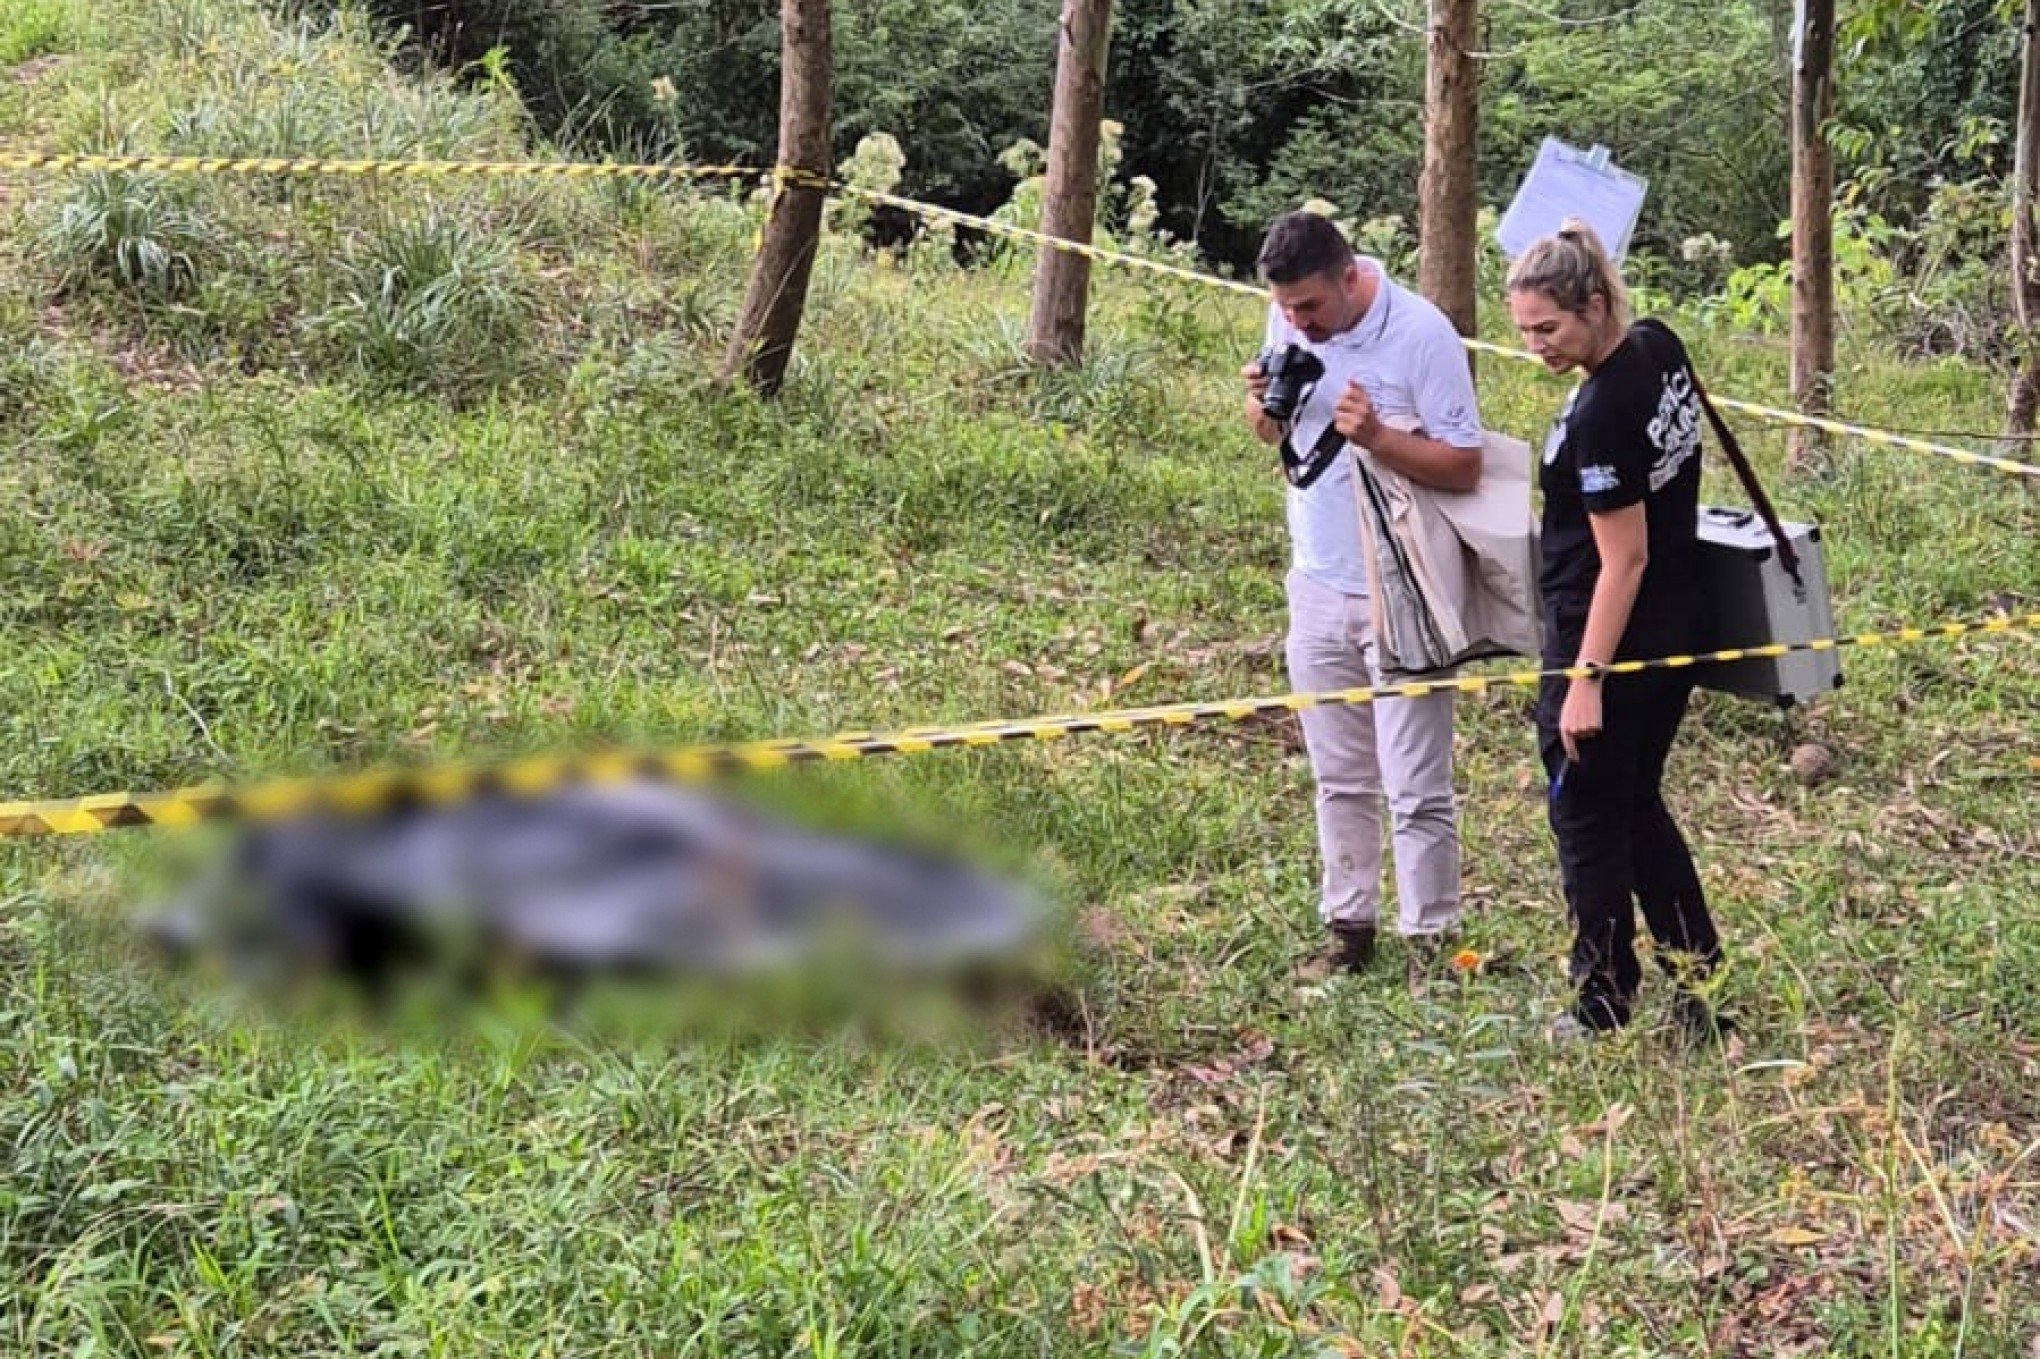 Caso extraconjugal motivou morte de homem com facada no pescoço às margens da RS-239, diz Polícia